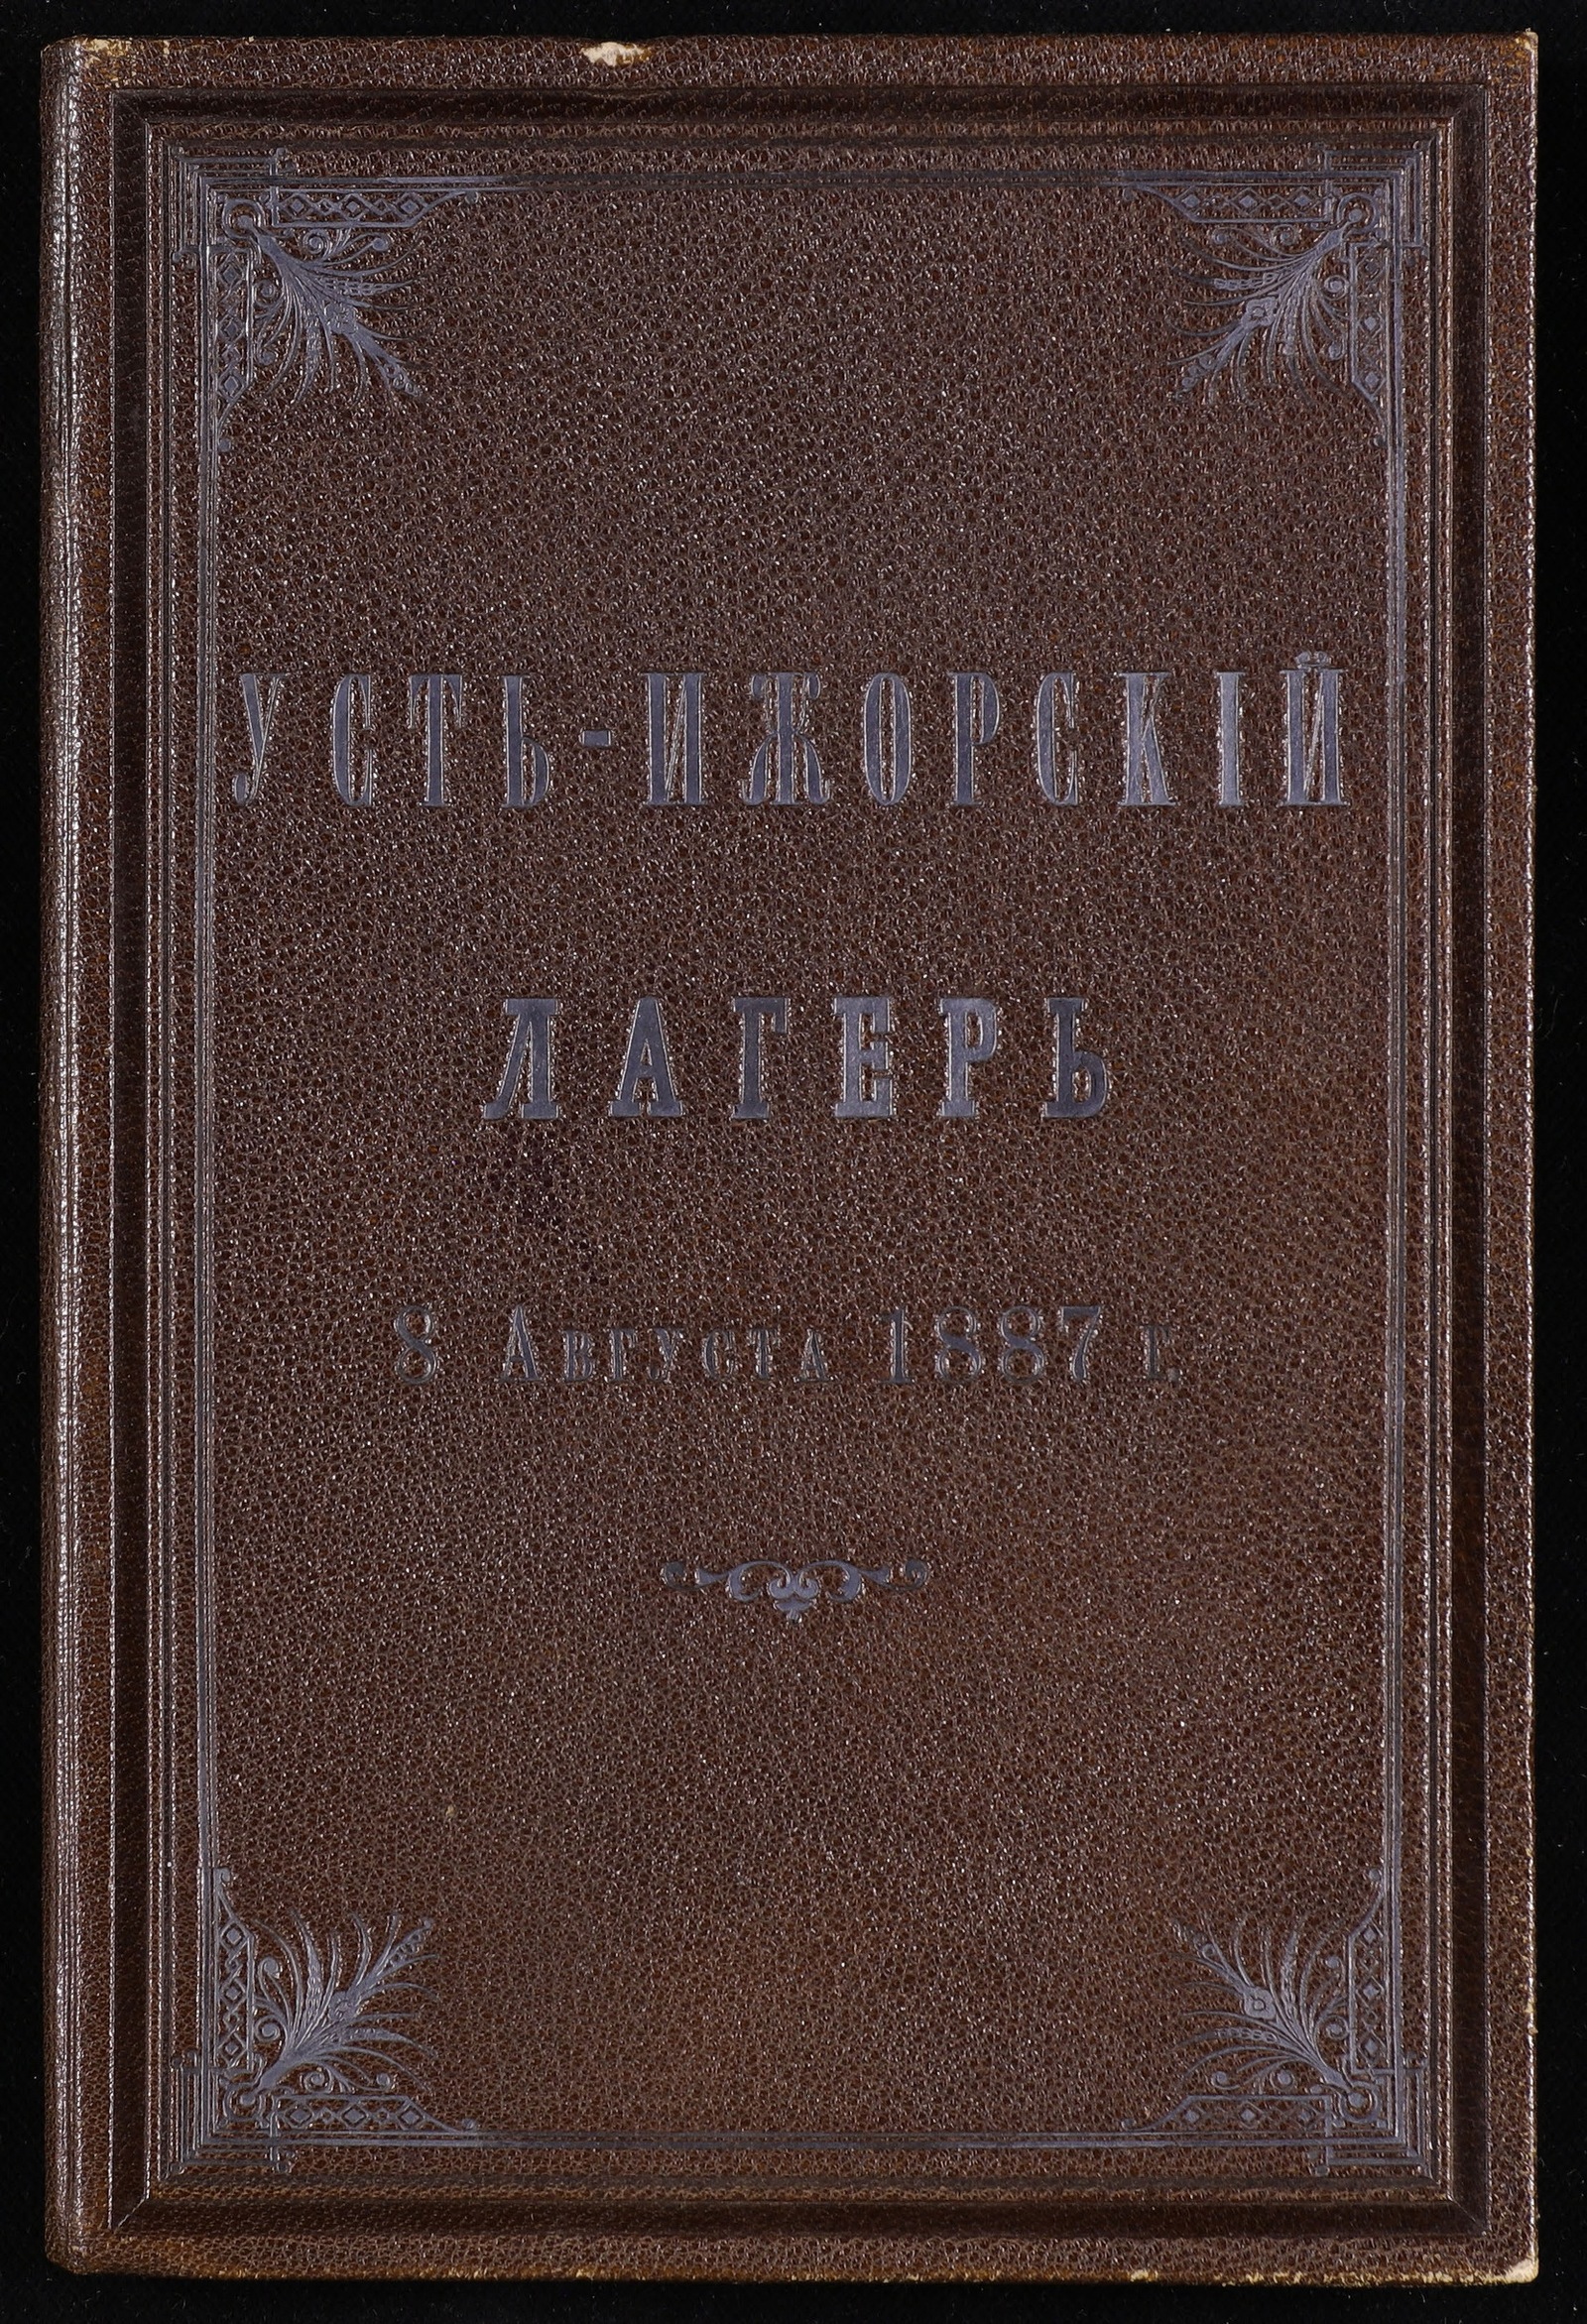 Изображение книги Усть-Ижорский лагерь 8 августа 1887 года: планы и чертежи